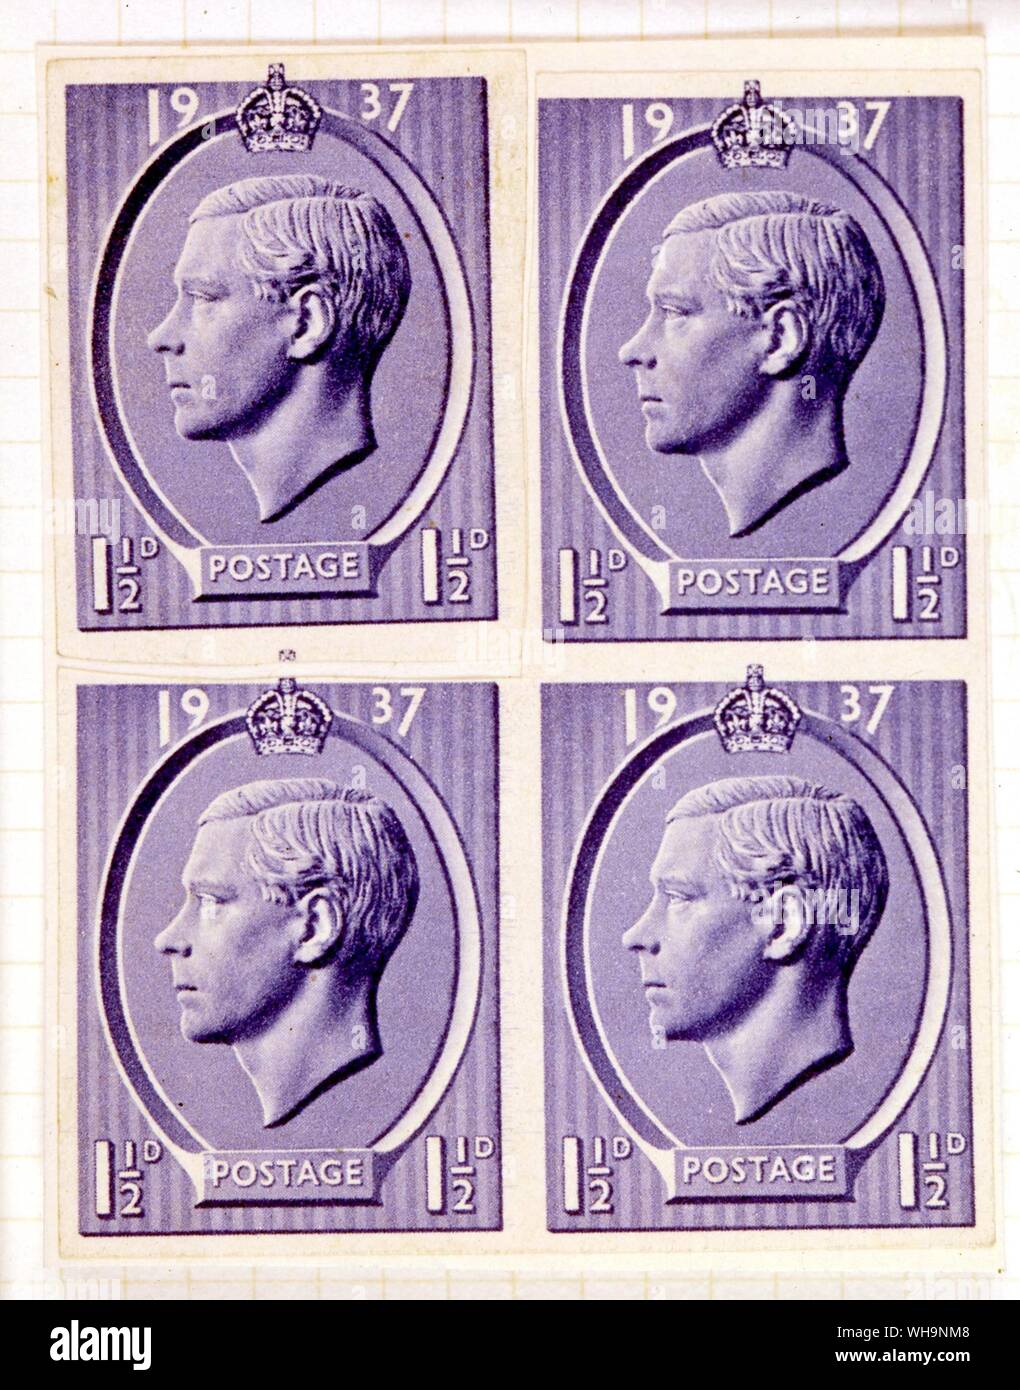 Proyecta Emisiones de sellos del Rey Eduardo VIII 1937 Foto de stock